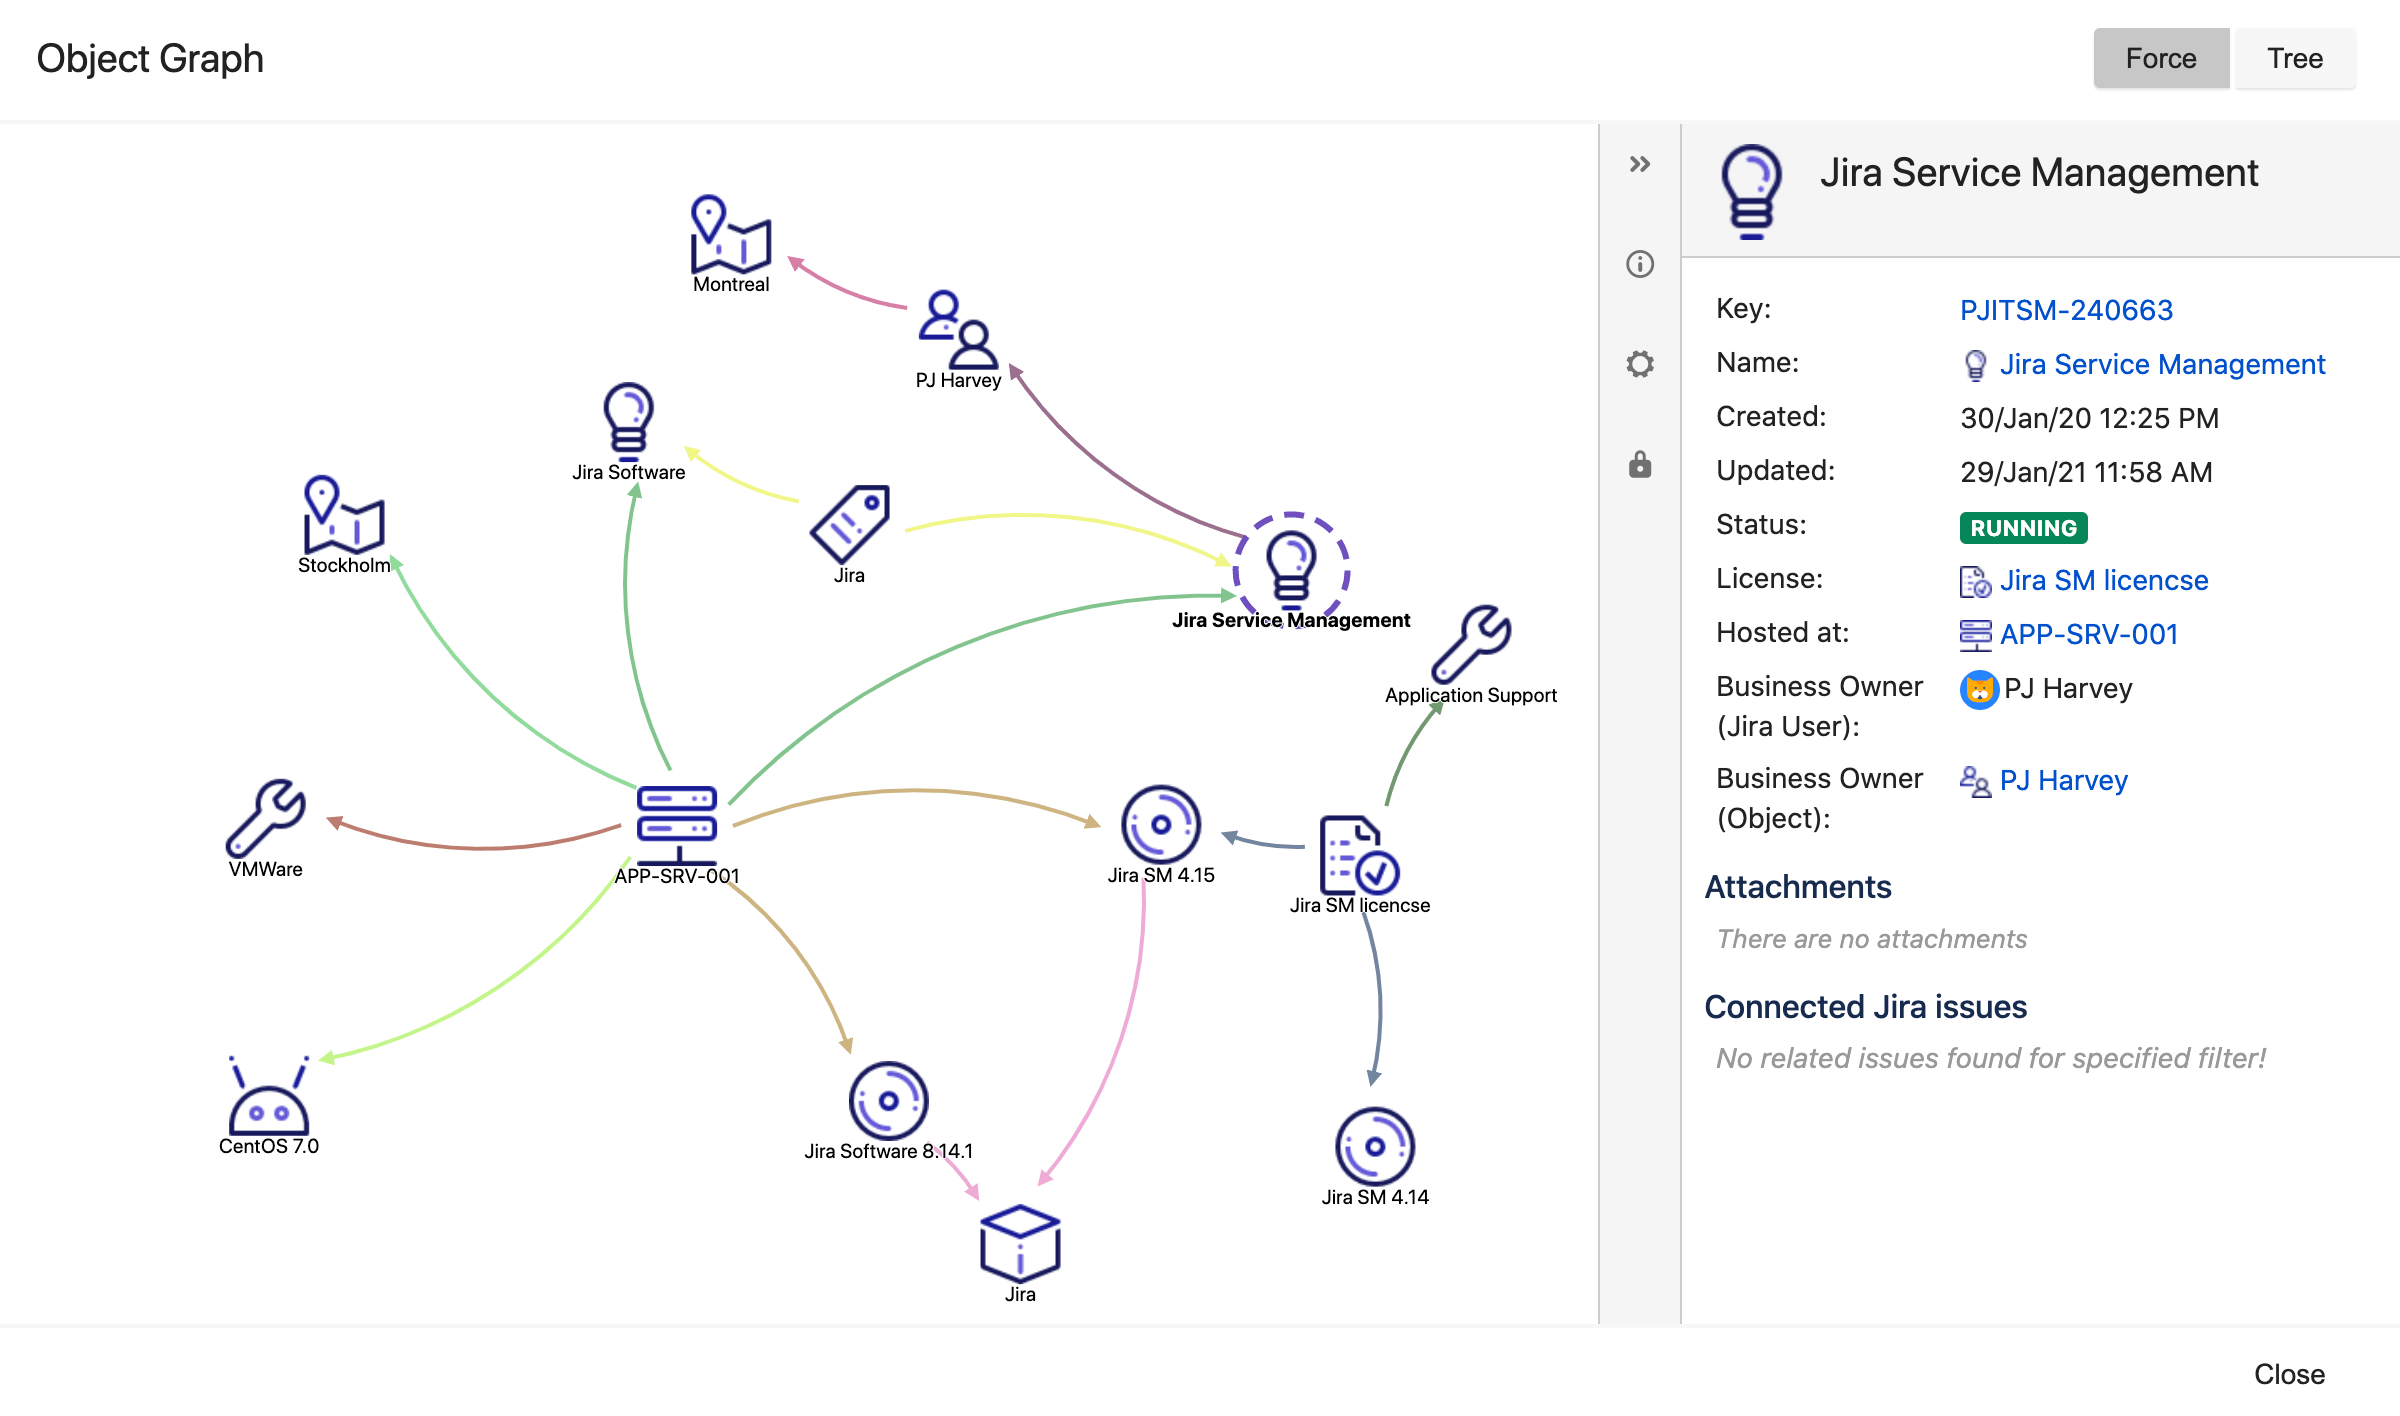 Finestra del visualizzatore grafico di Insight per l'oggetto "Jira Service Management". Mostra le dipendenze, ad esempio gli host in cui si trova, il suo sistema operativo, le diverse versioni di Jira che richiede e la licenza.